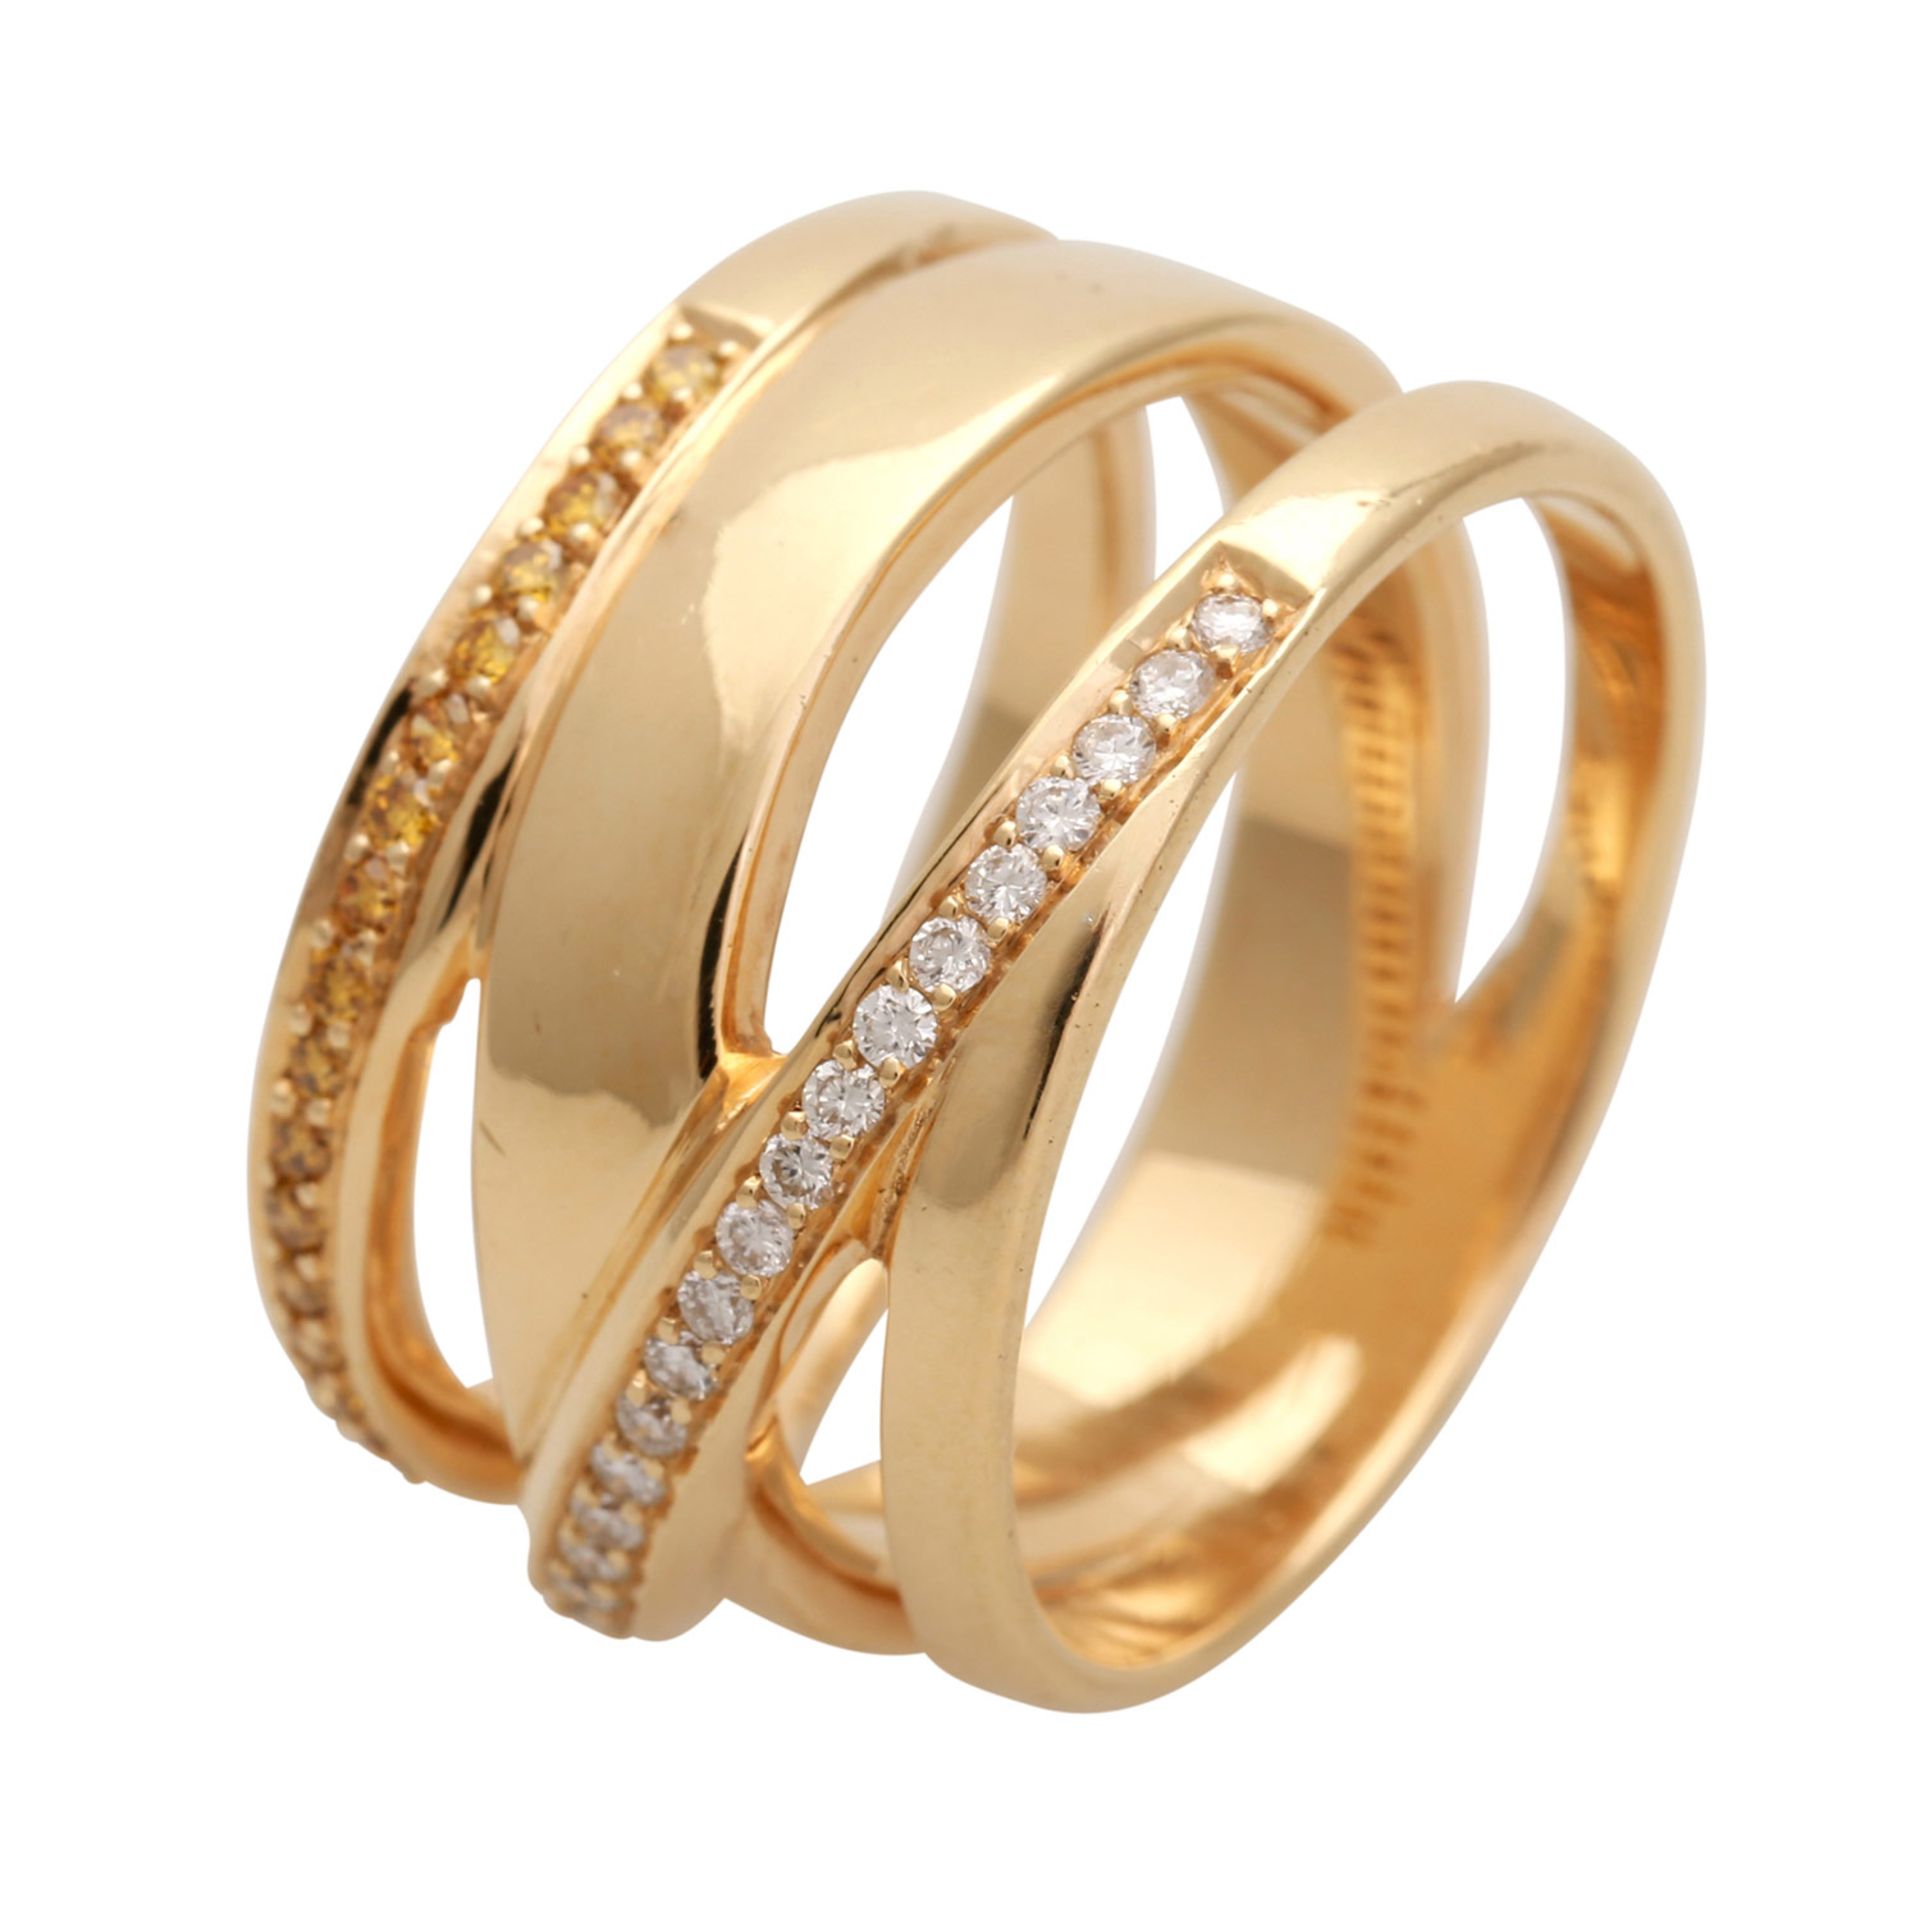 Ring mit 28 weißen und 23 gelben Brillanten, zus. ca. 0,51 ct, guter Farb- und Reinheitsgrad, - Bild 4 aus 4